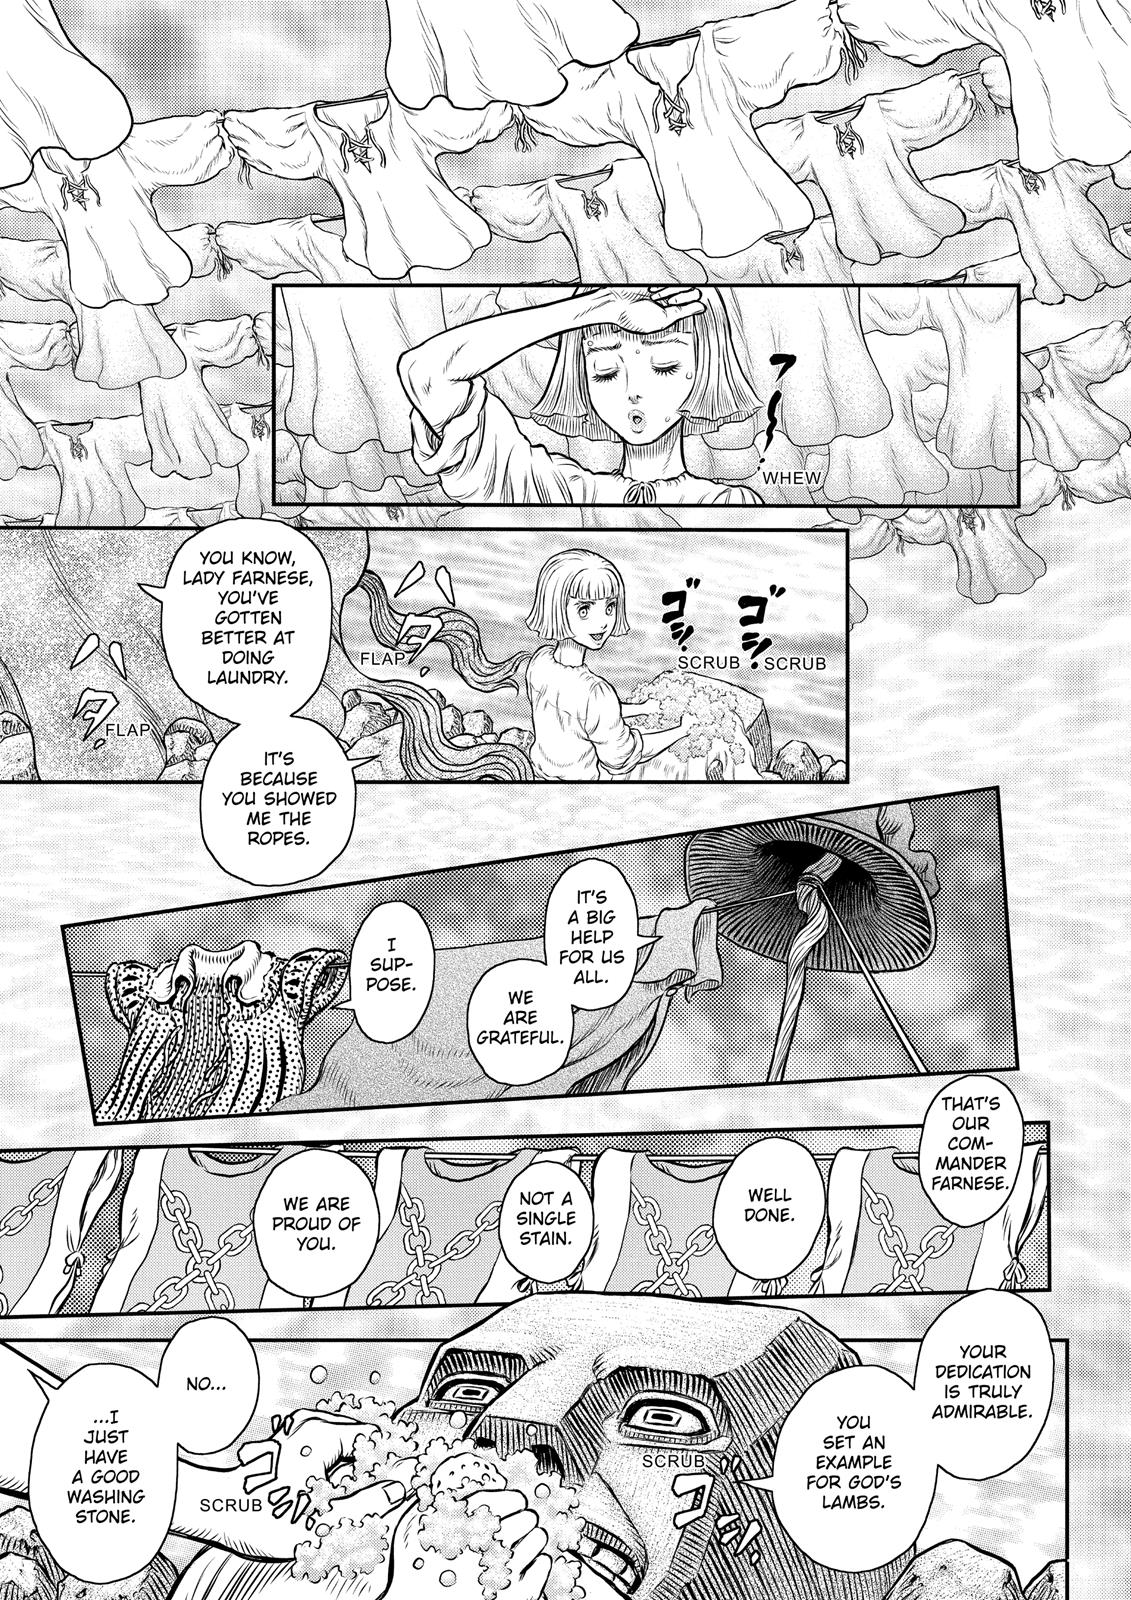 Berserk Manga Chapter 347 image 17